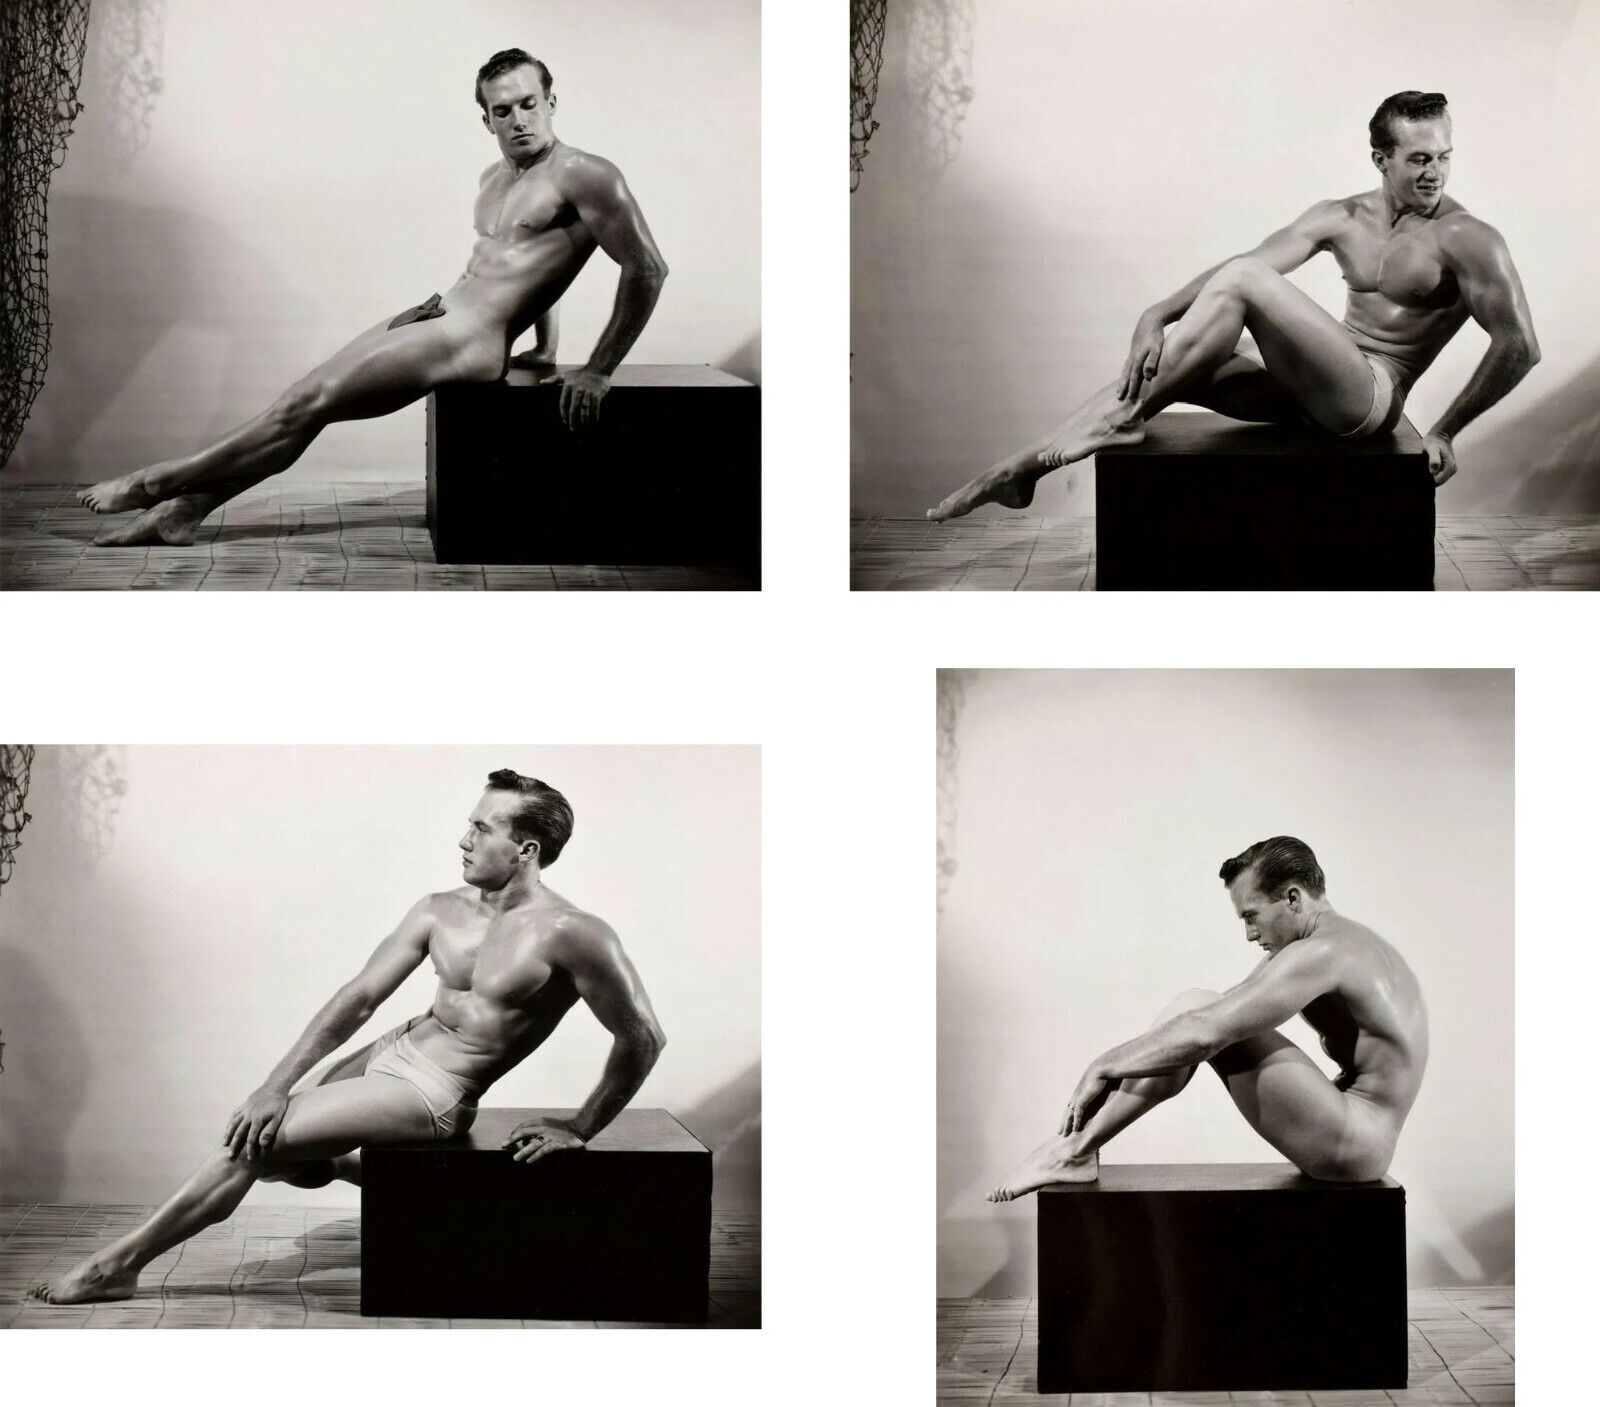 budi artawan add nude poses for men photo